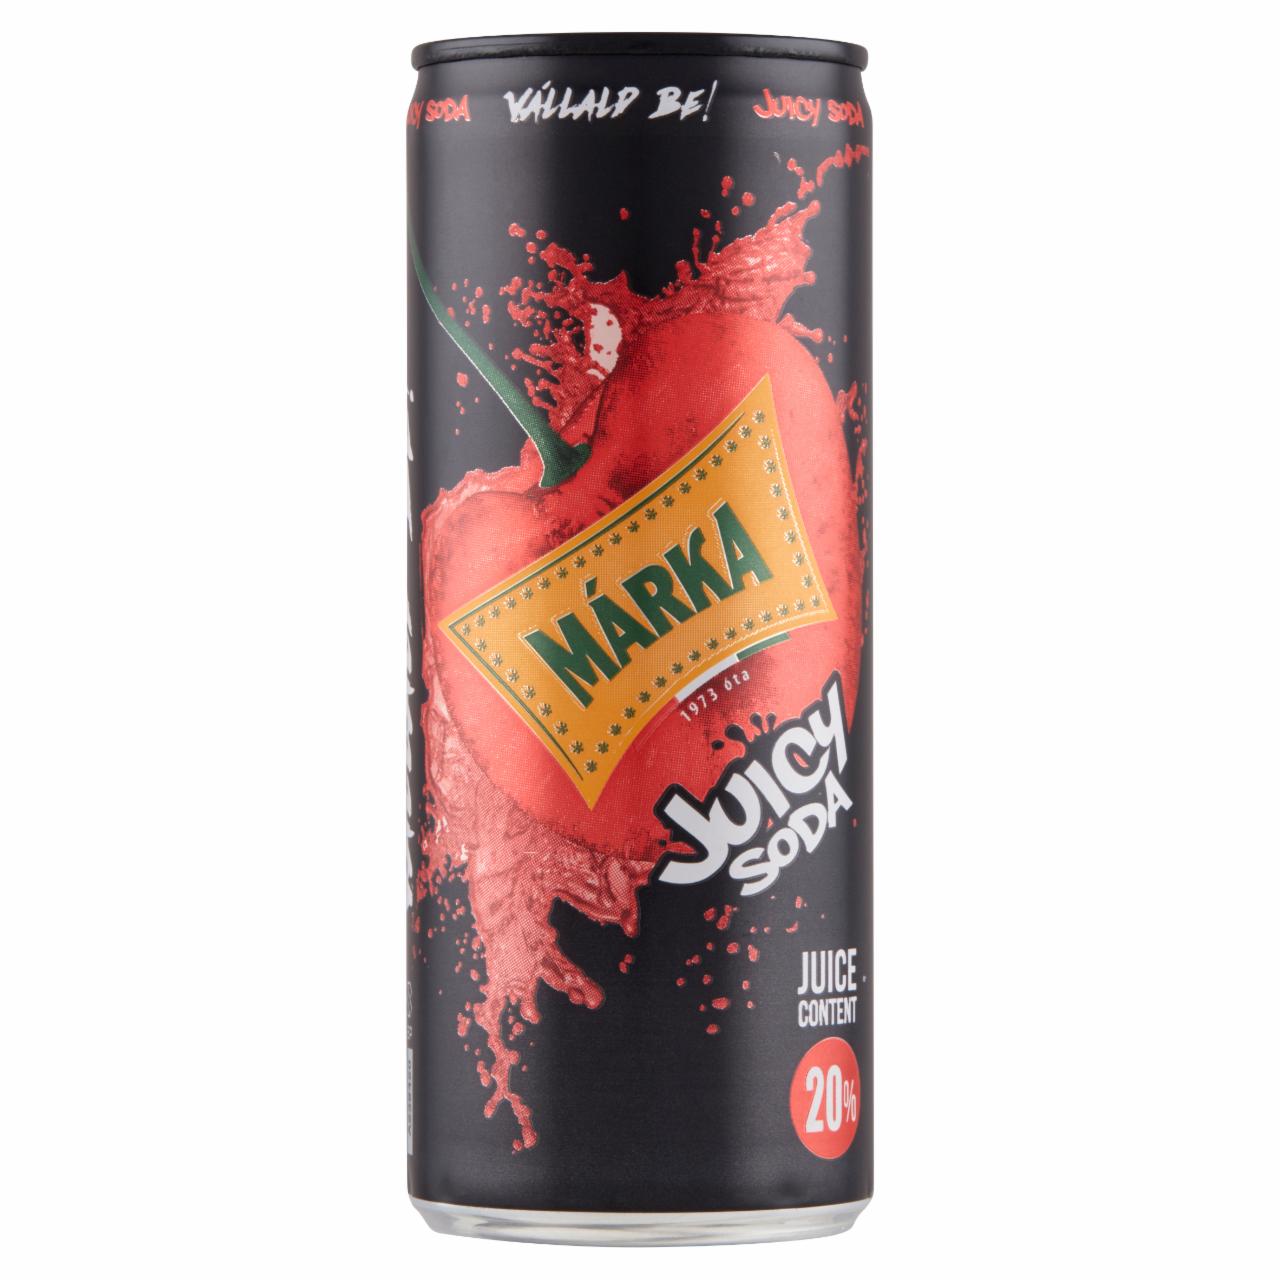 Képek - Márka Juicy Soda meggy szénsavas üdítőital cukorral és édesítőszerrel 250 ml